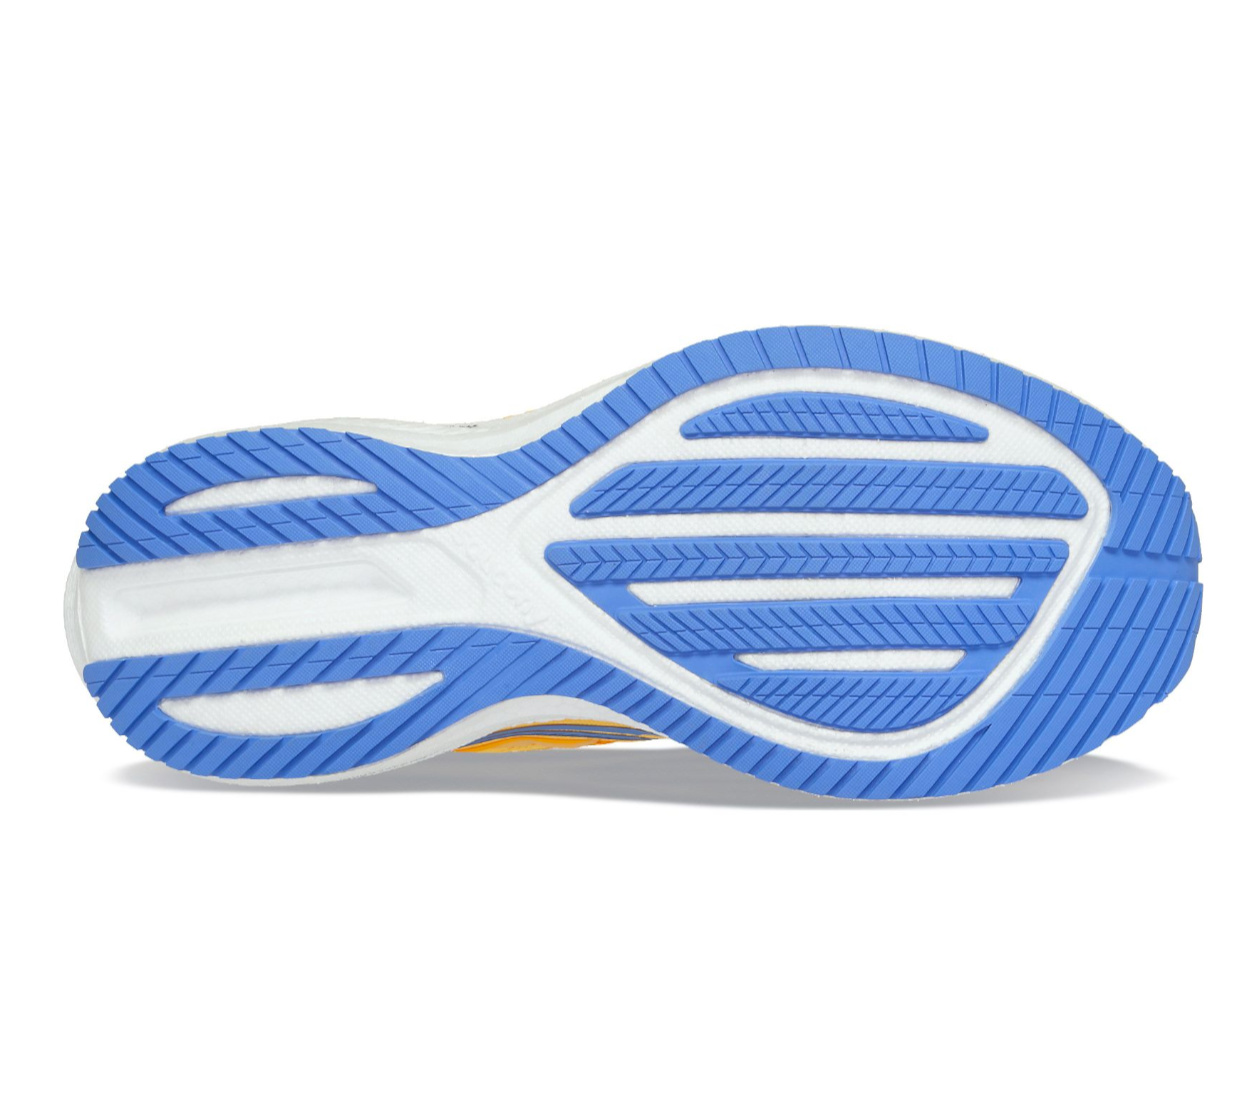 Saucony Triumph 20 (W) scarpe ammortizzate e flessibili | LBM Sport